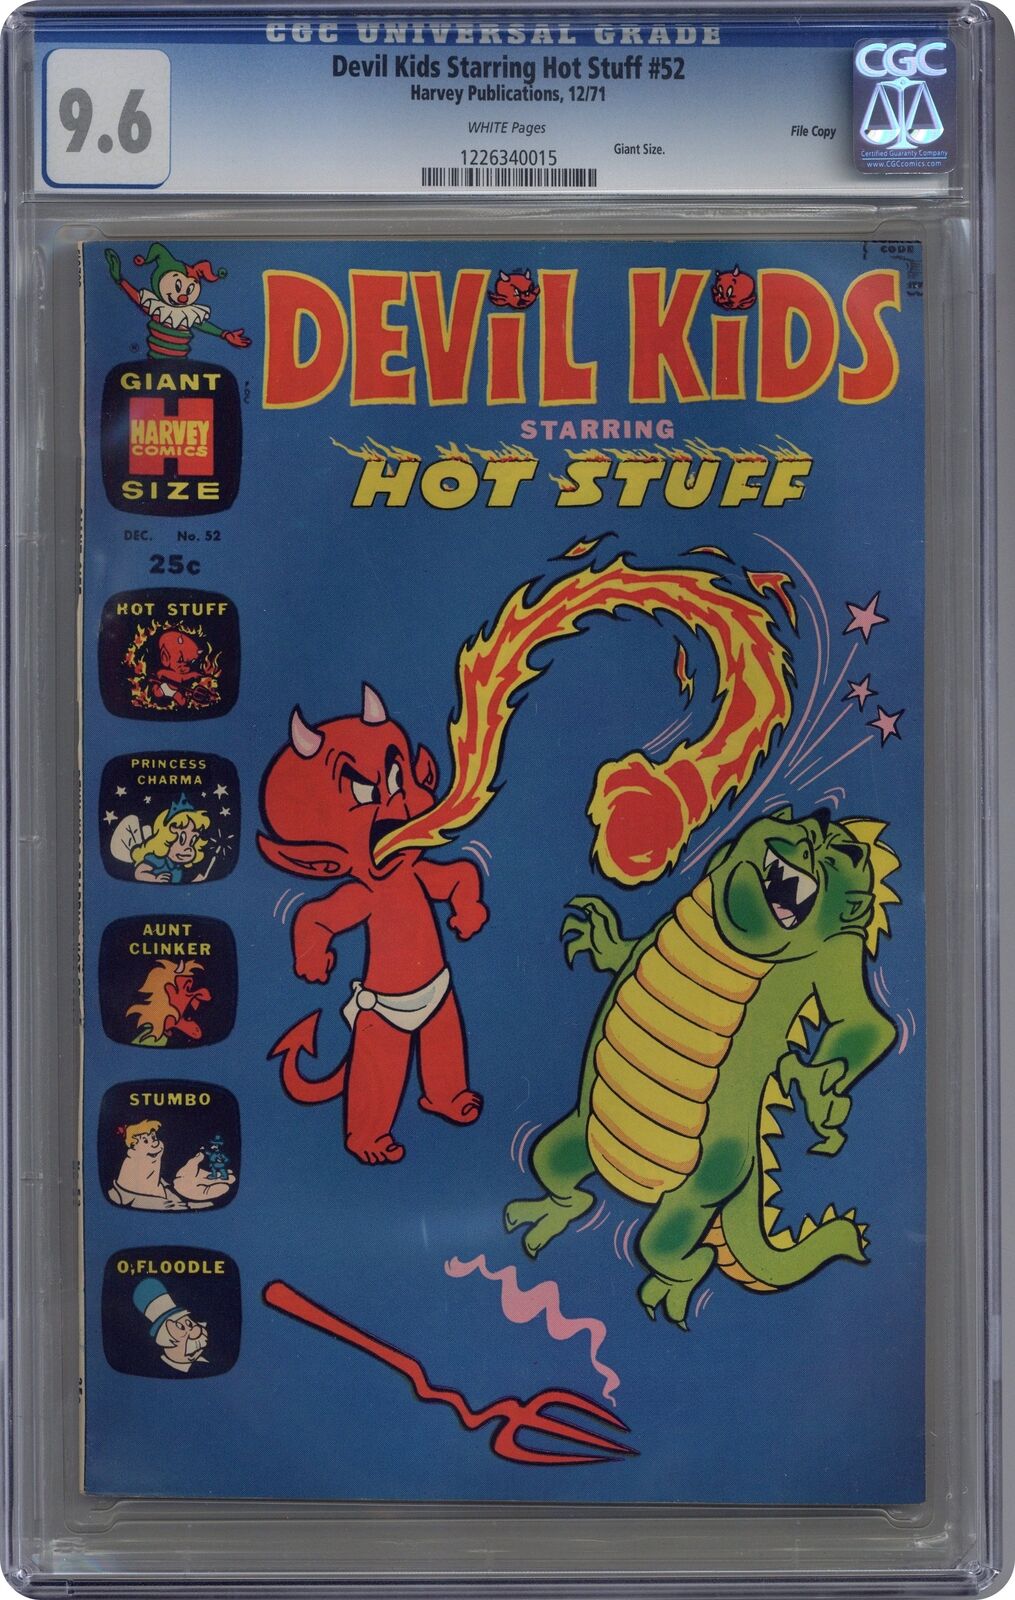 Devil Kids Starring Hot Stuff #52 CGC 9.6 1971 1226340015